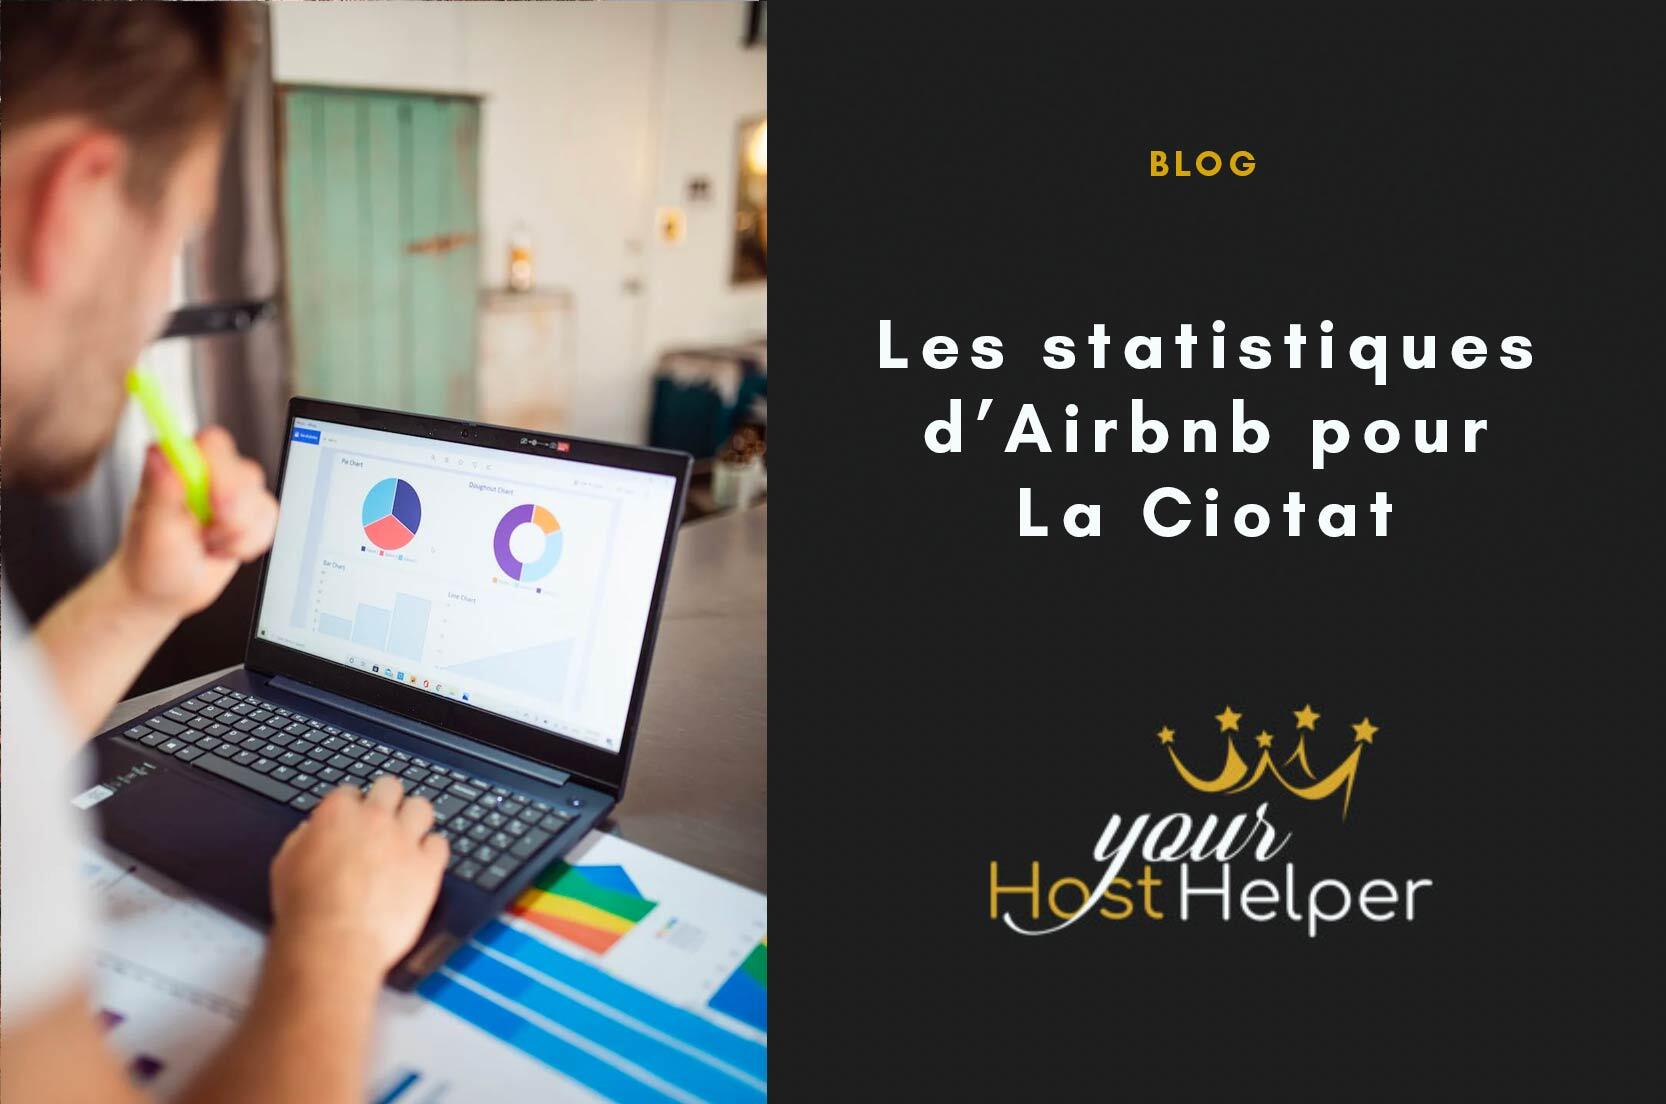 В настоящее время вы просматриваете статистику La Ciotat Airbnb, детализированную нашим консьержем.